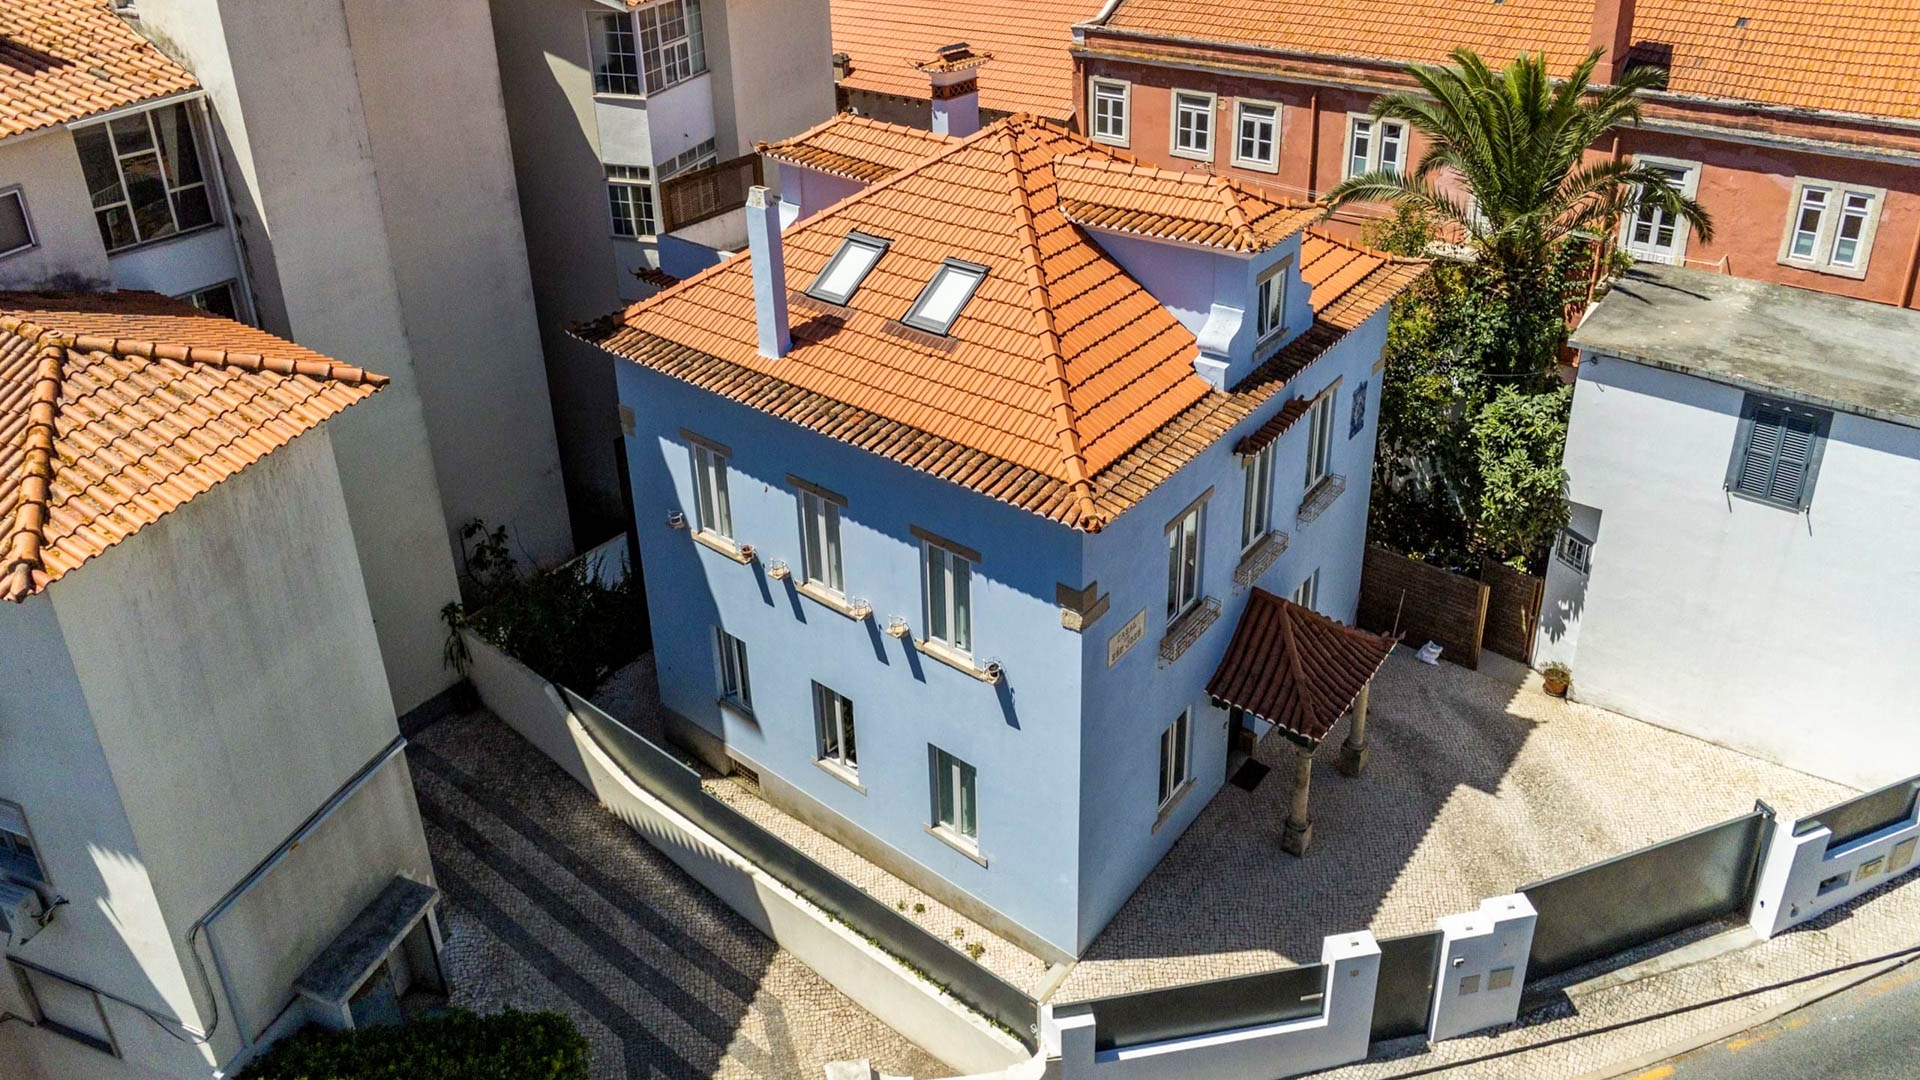 Casa de 3 Quartos localizada no Estoril, Cascais | PDB1944 